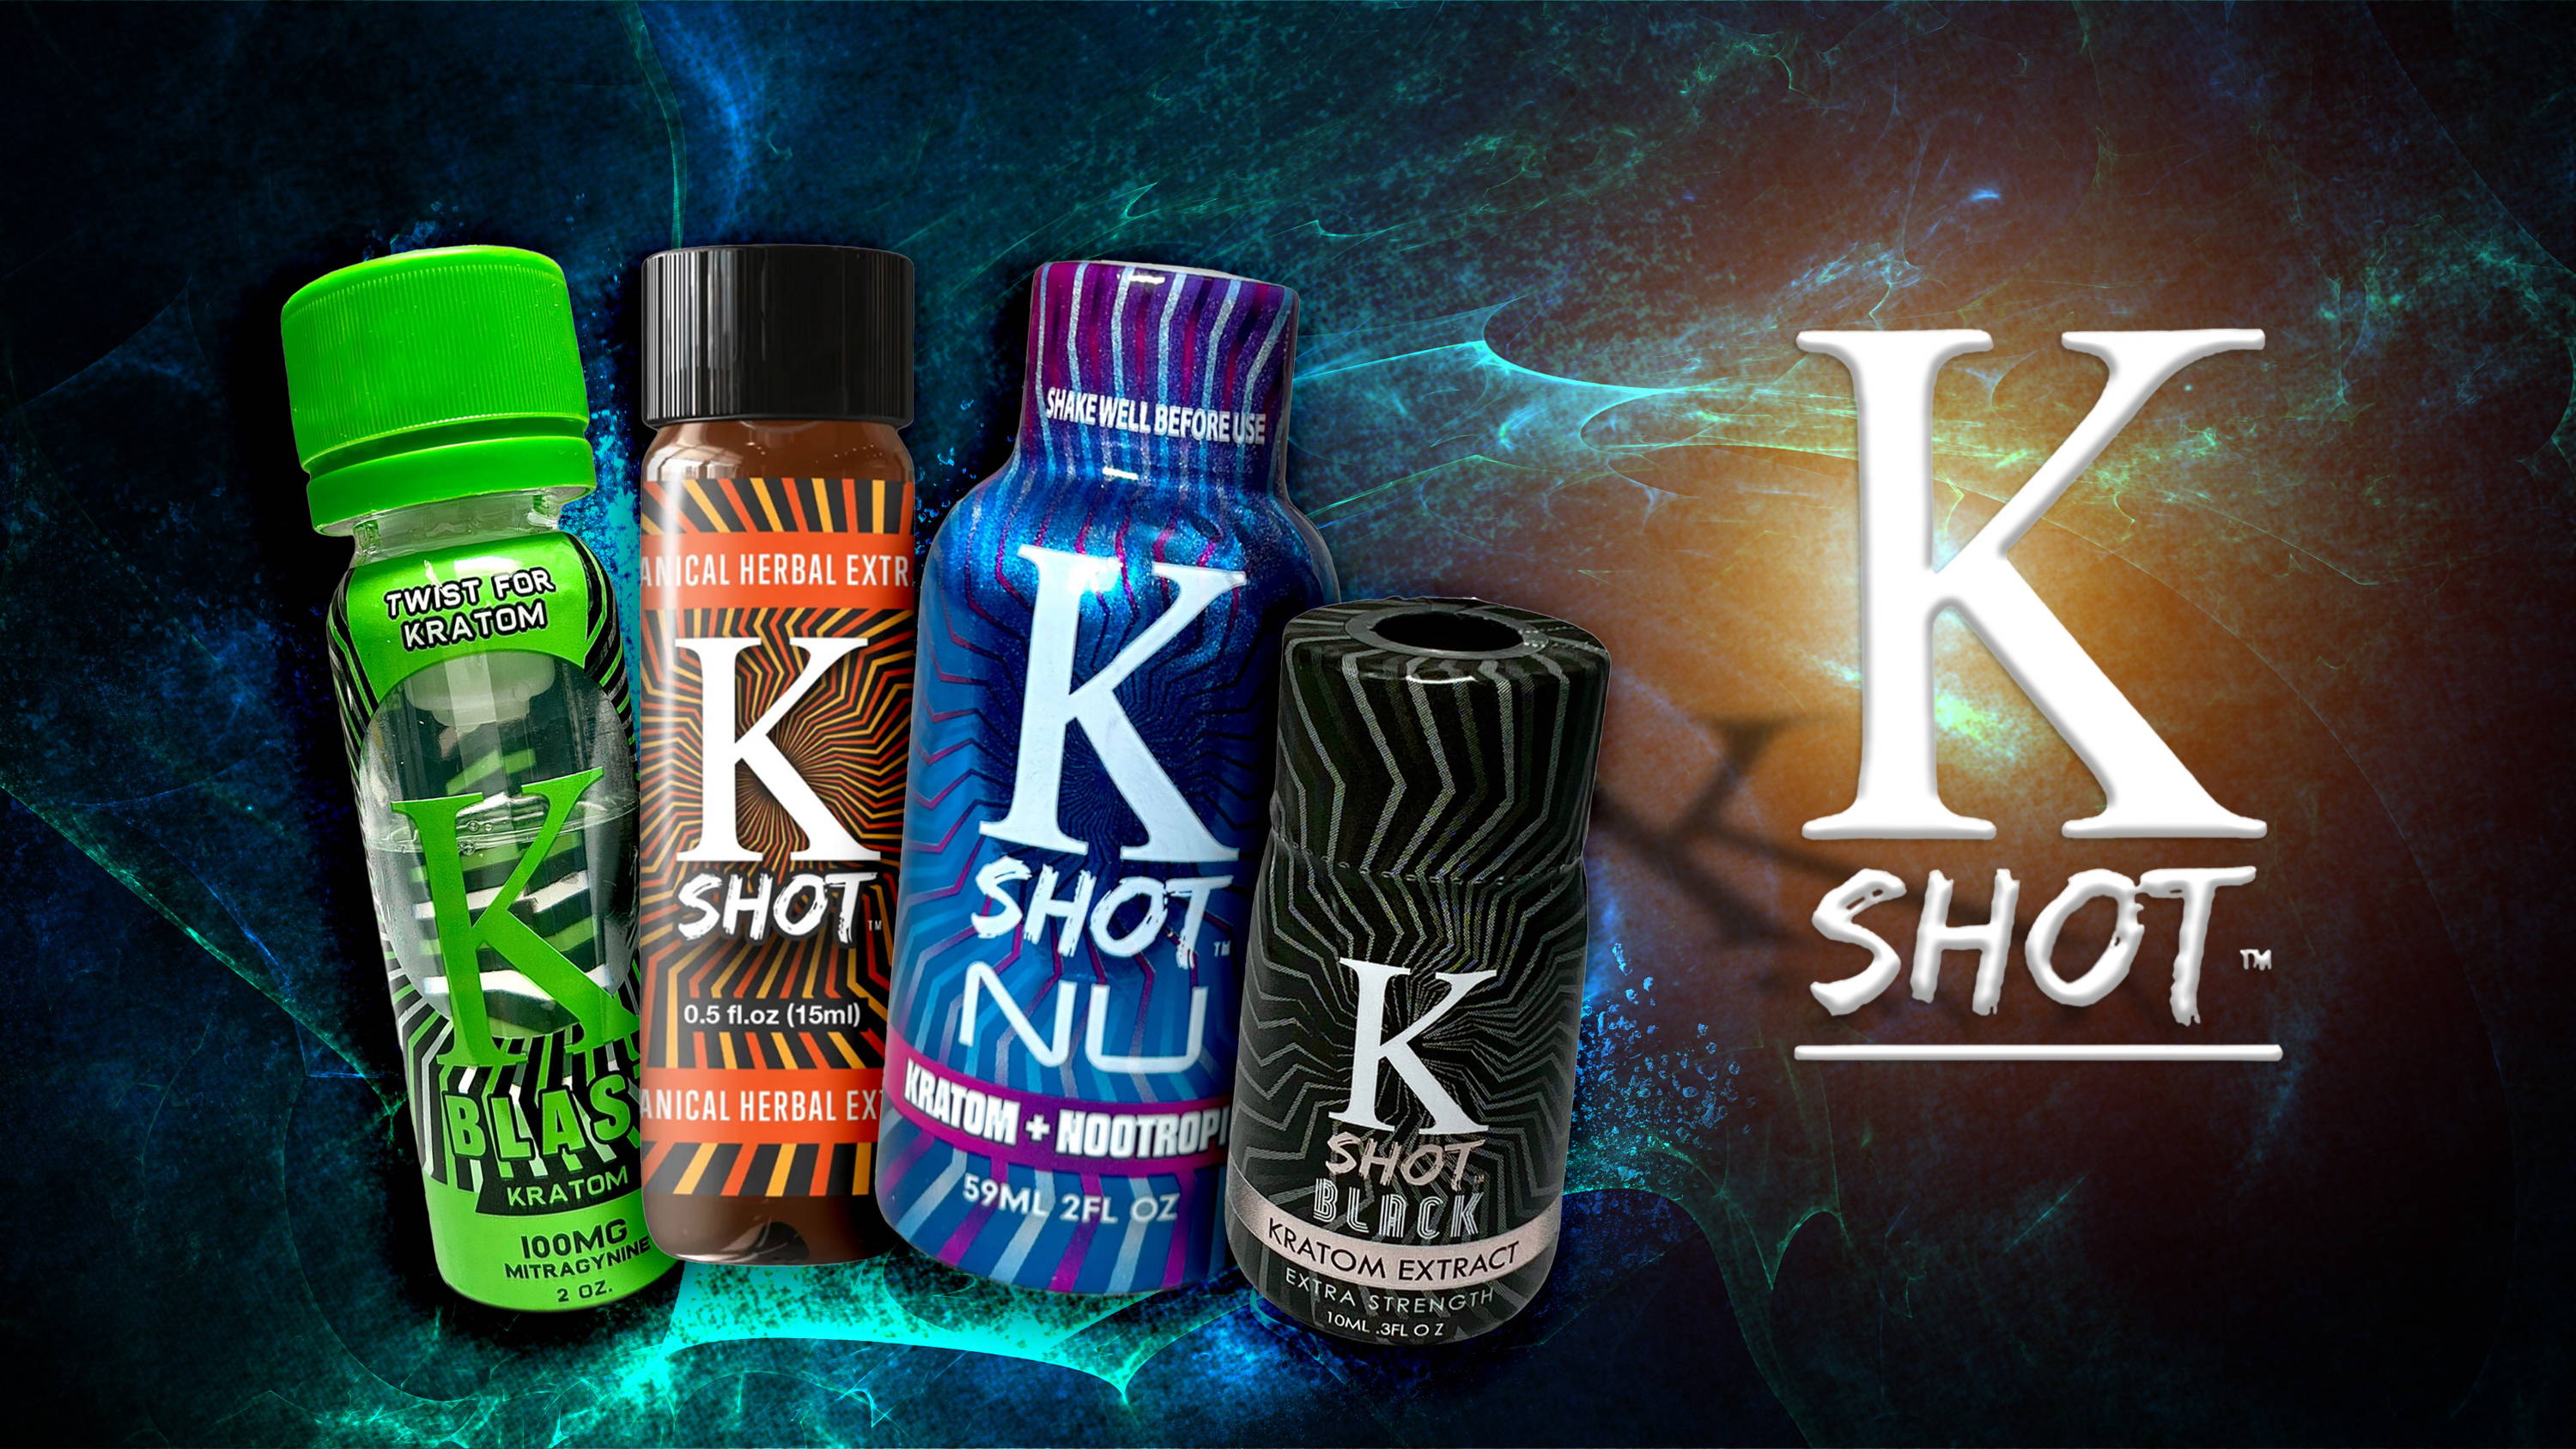 K Shot Sampler Pack K Shot Nu, K Blast, K Shot, and K Shot Black